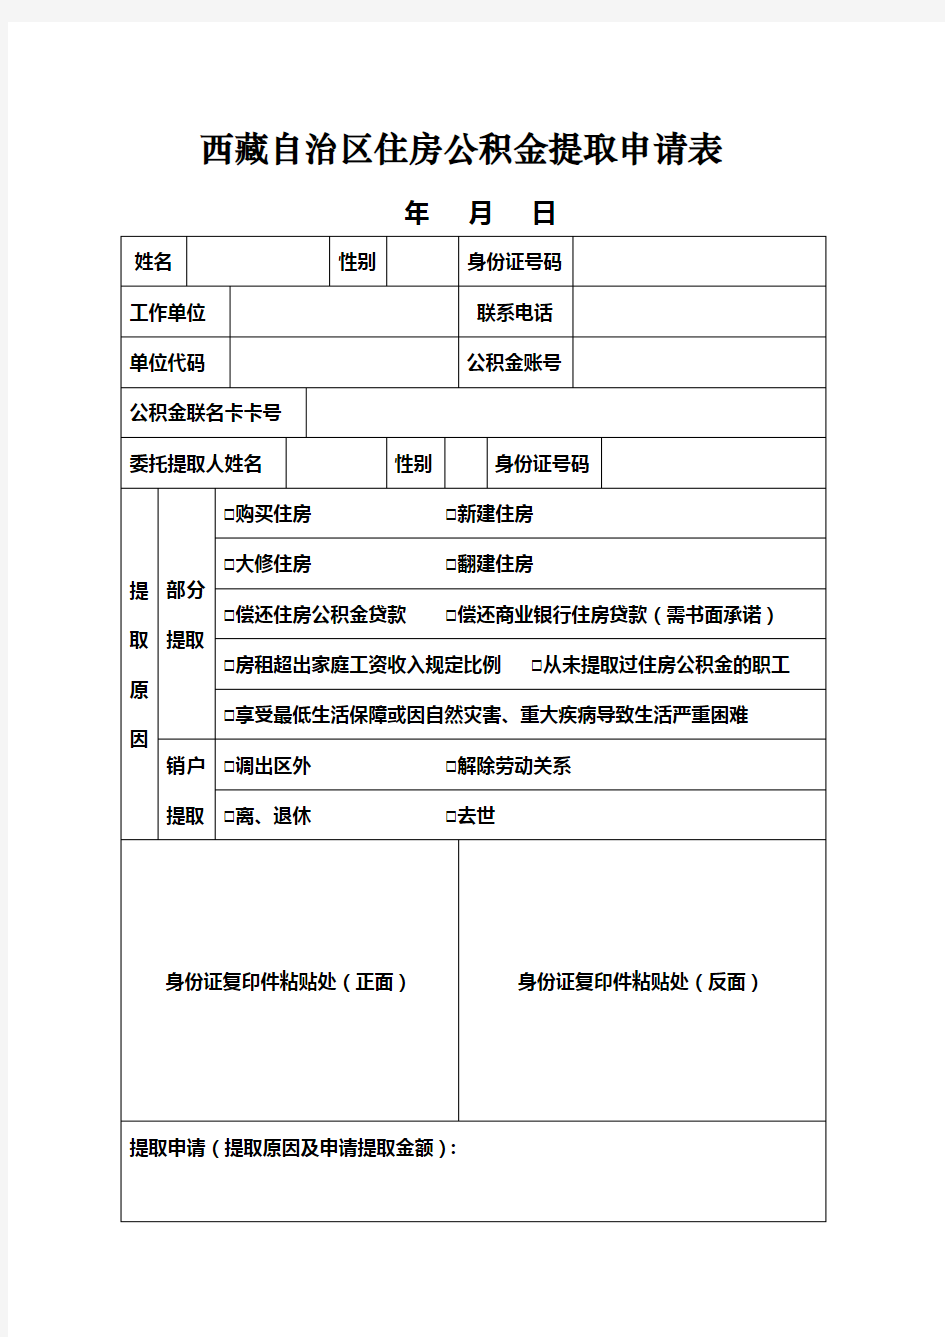 西藏自治区住房公积金提取申请表